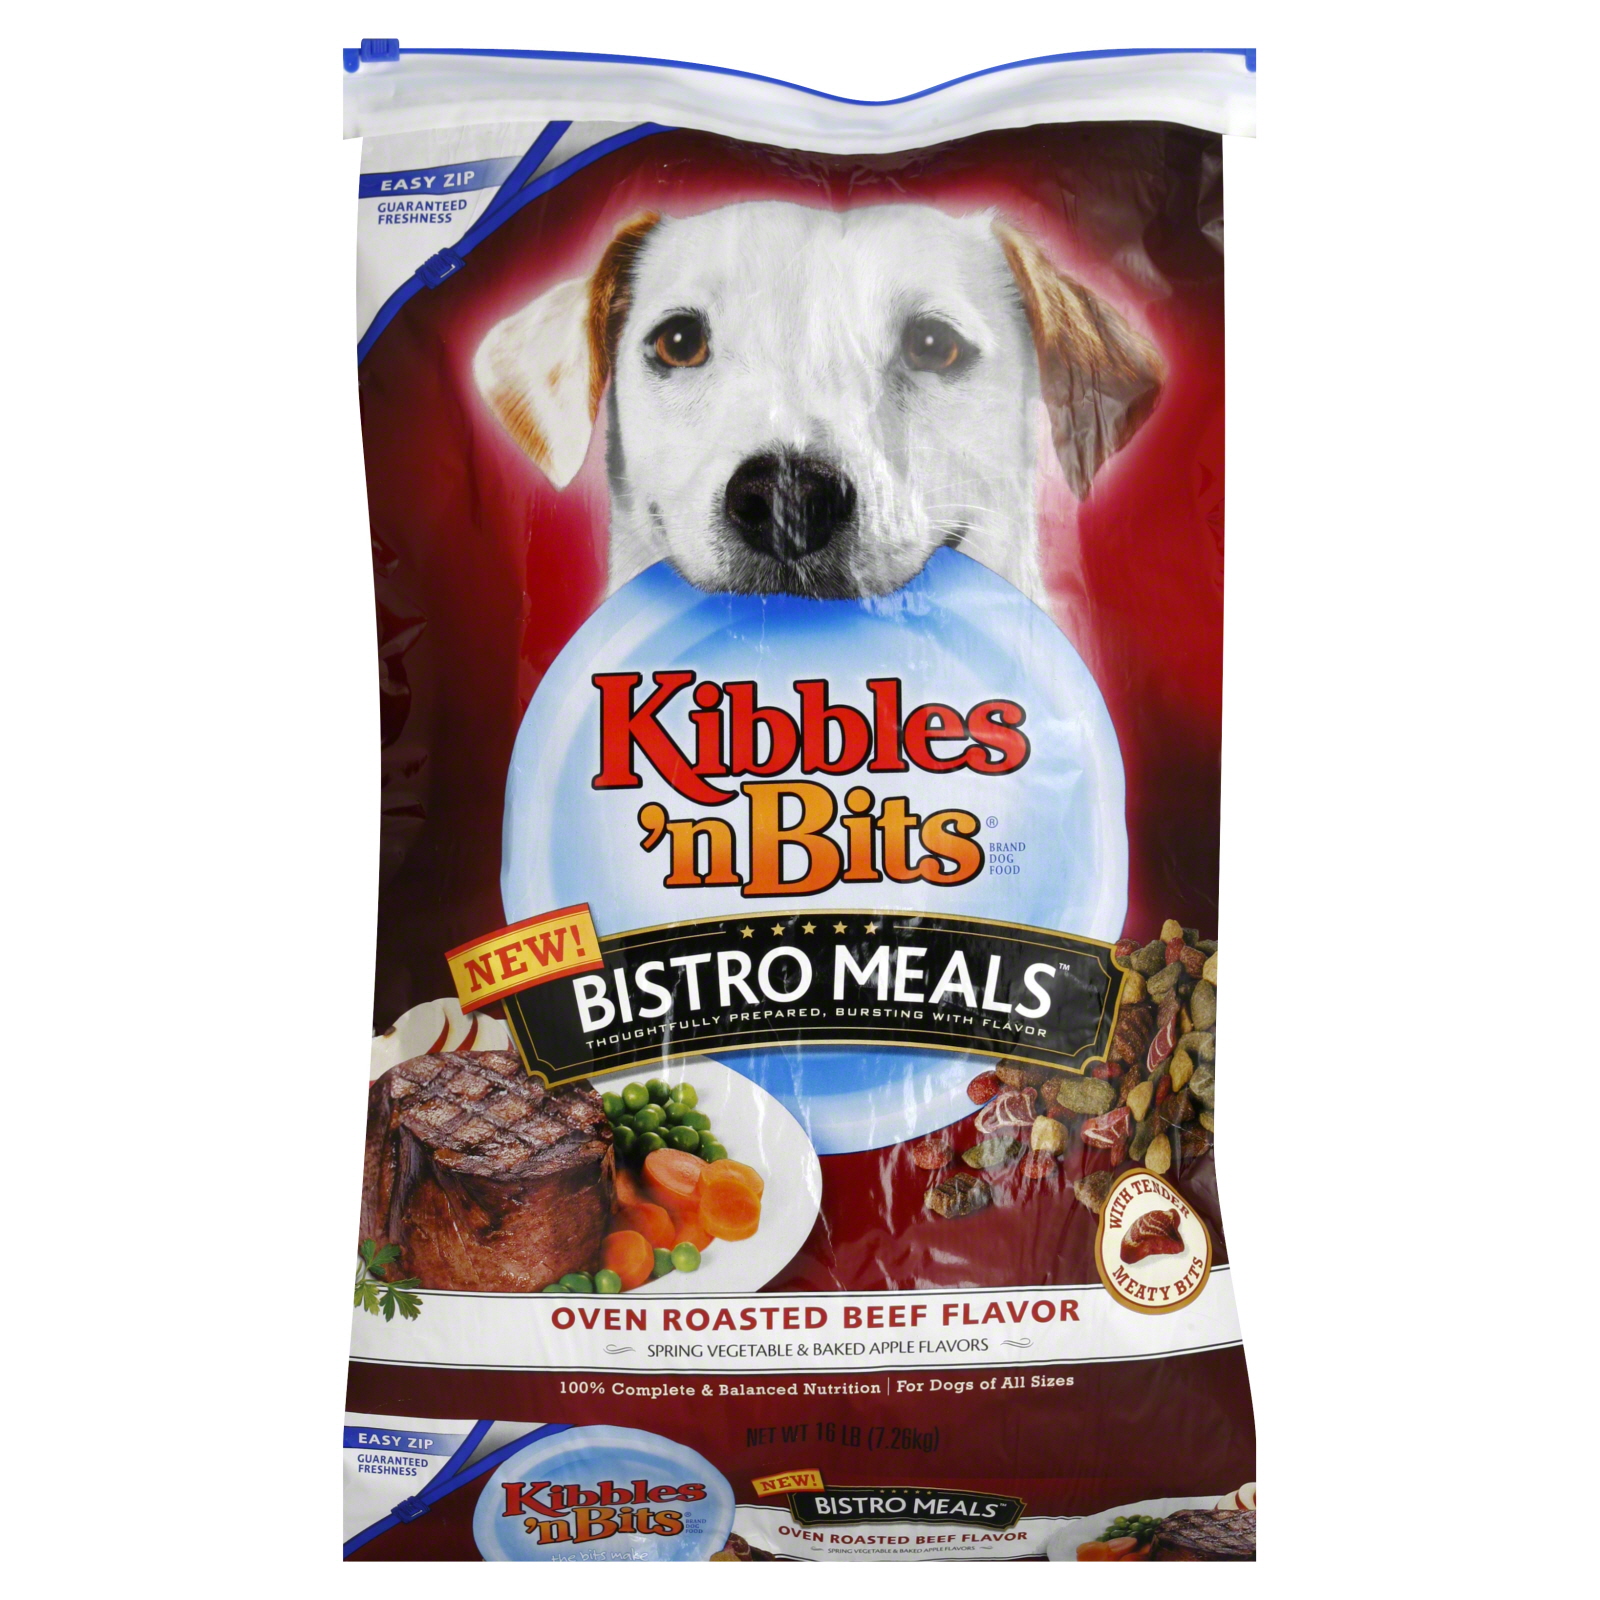 Kibbles 'n Bits Bistro Meals Oven Roasted Beef Flavor Dog Food 16 lb. Bag